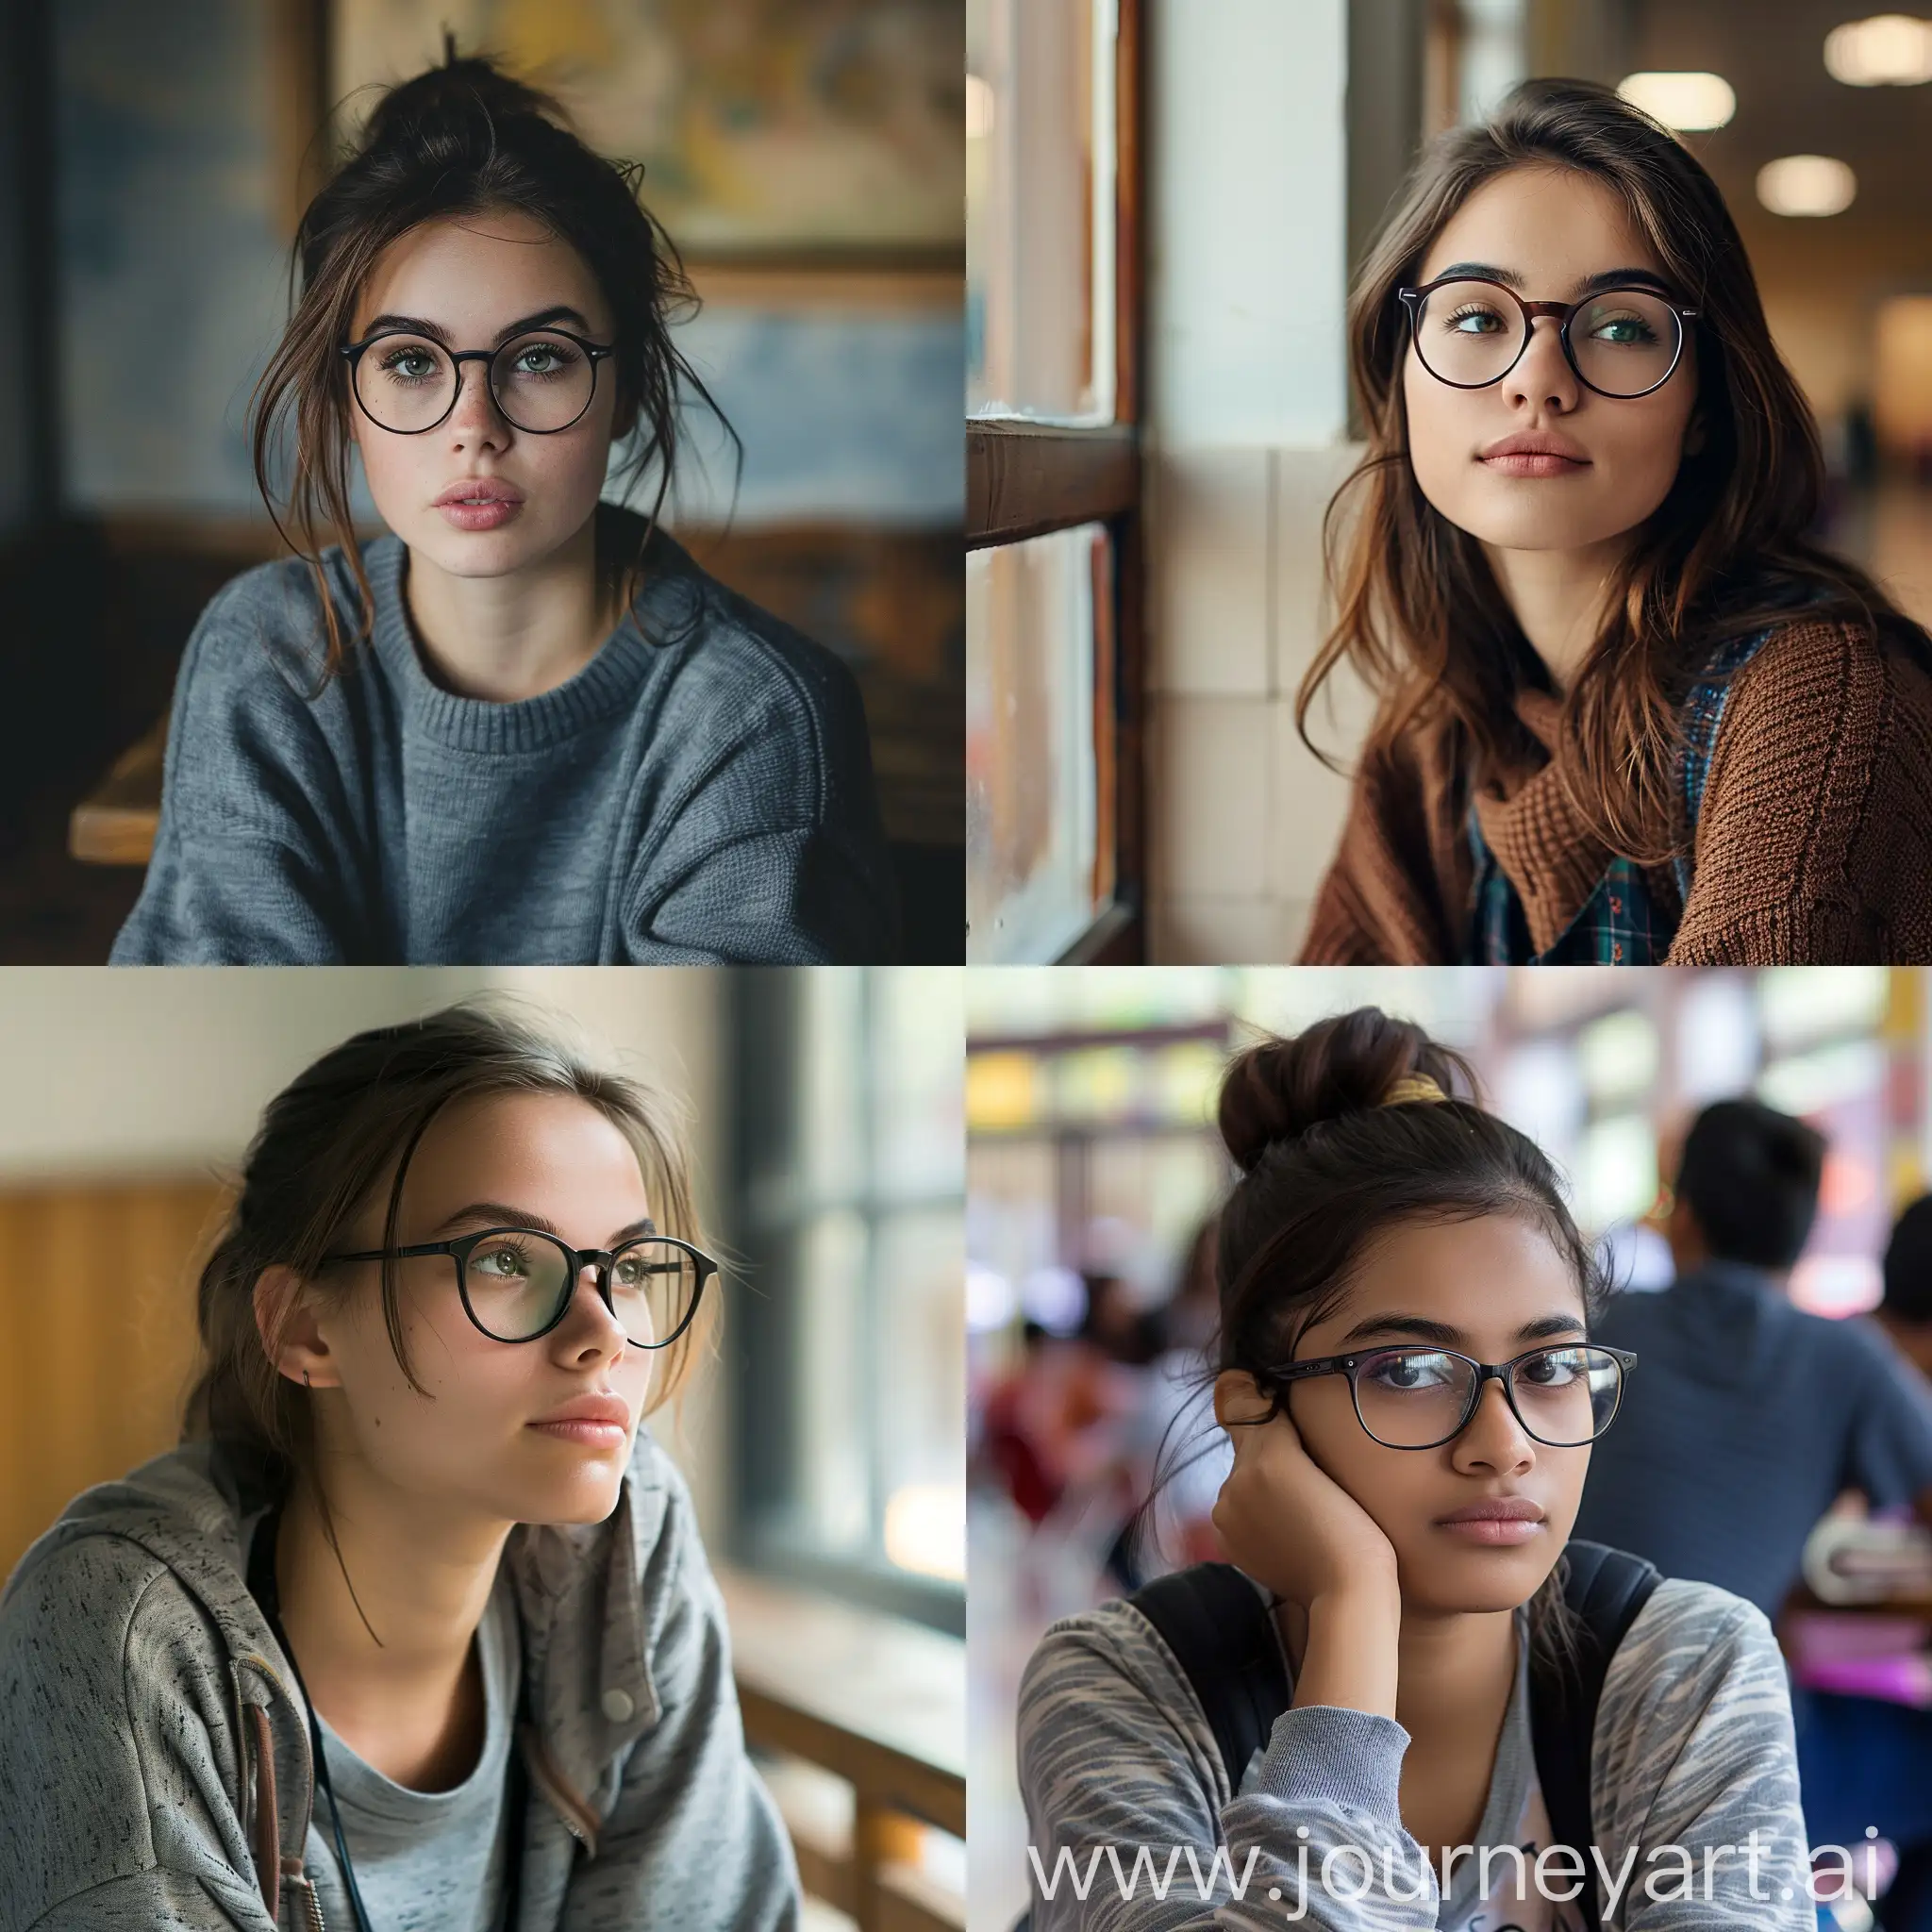 一位年轻在校戴眼镜的文静女大学生